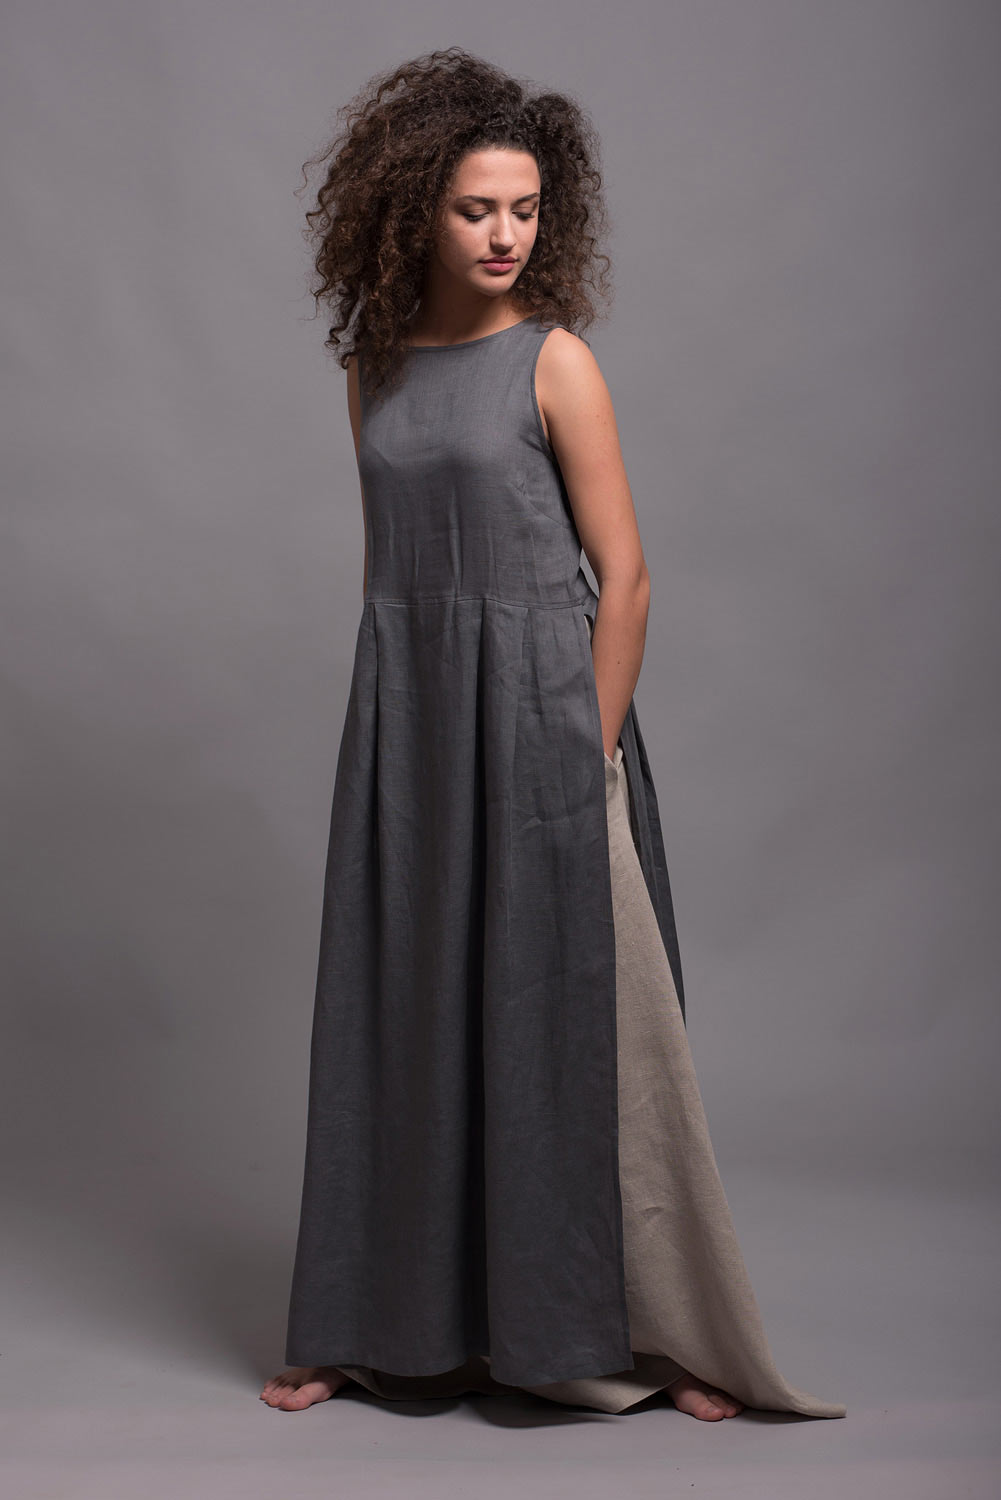 Zury Tunic Dress Womens Free Size Aqua Cream Top V Neck Long Sleeve Fringe  New | eBay